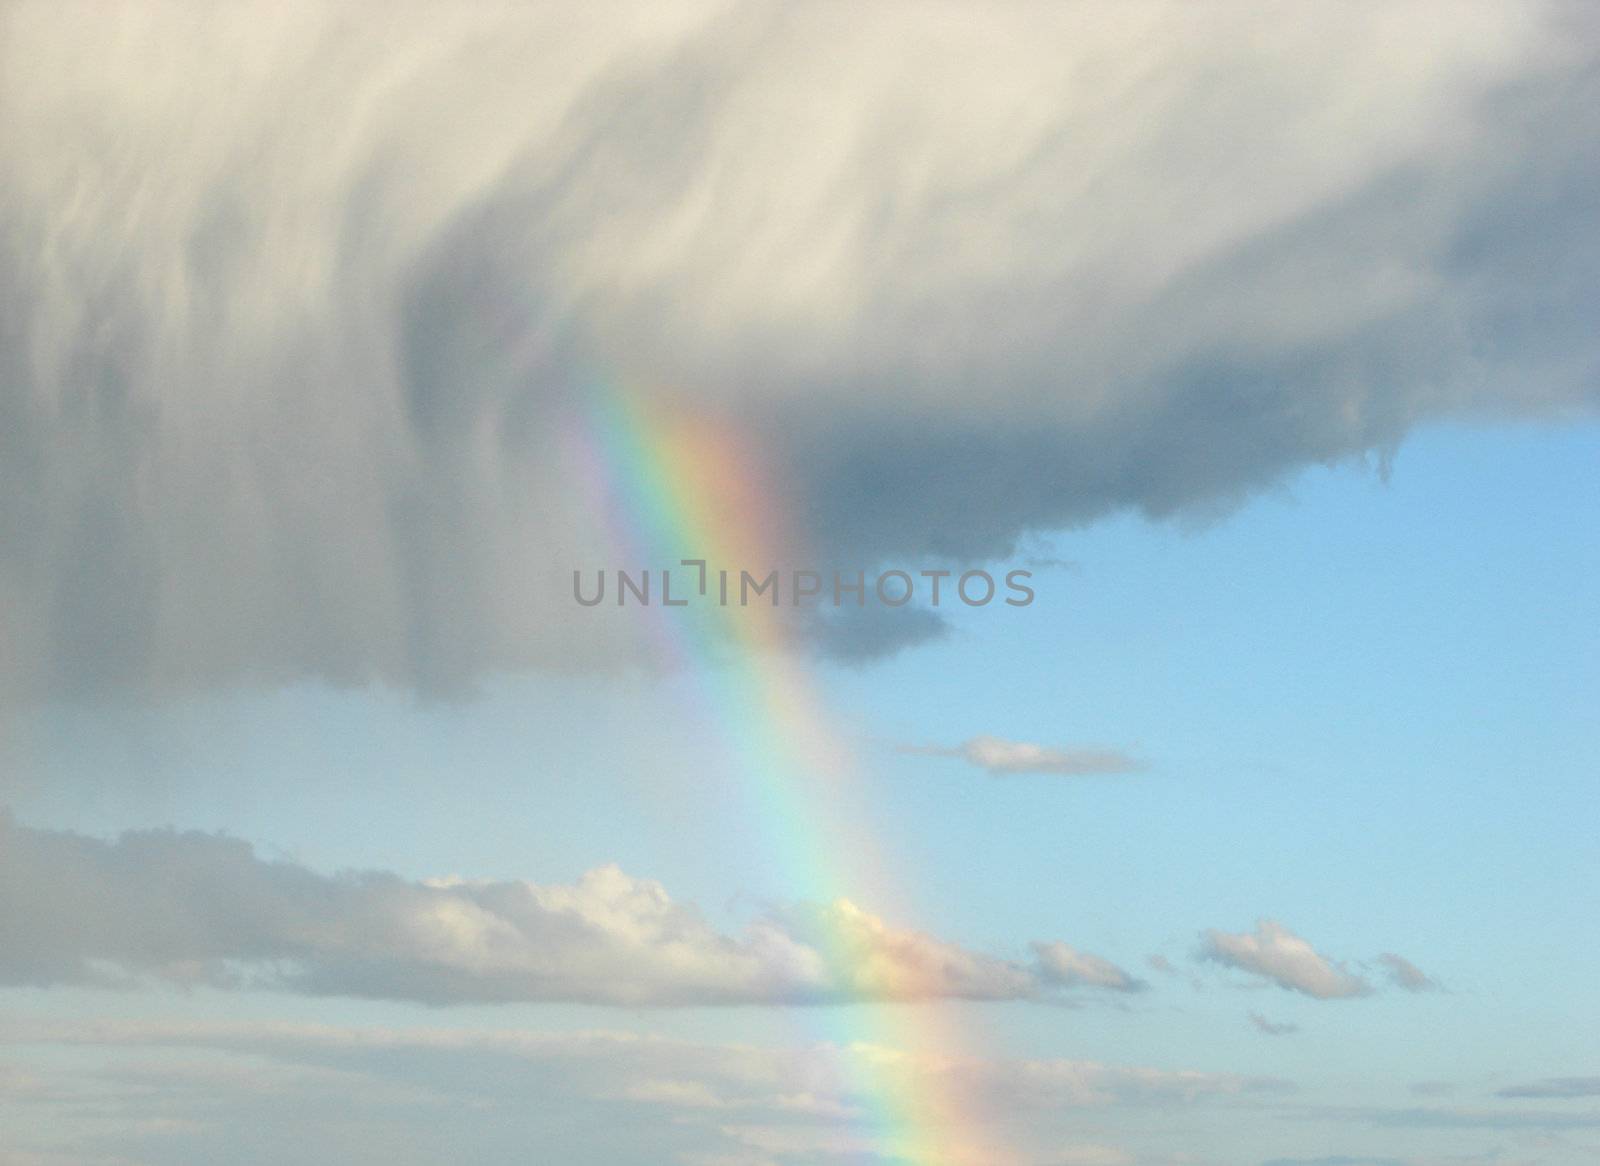 Rainbow_11 by Thorvis